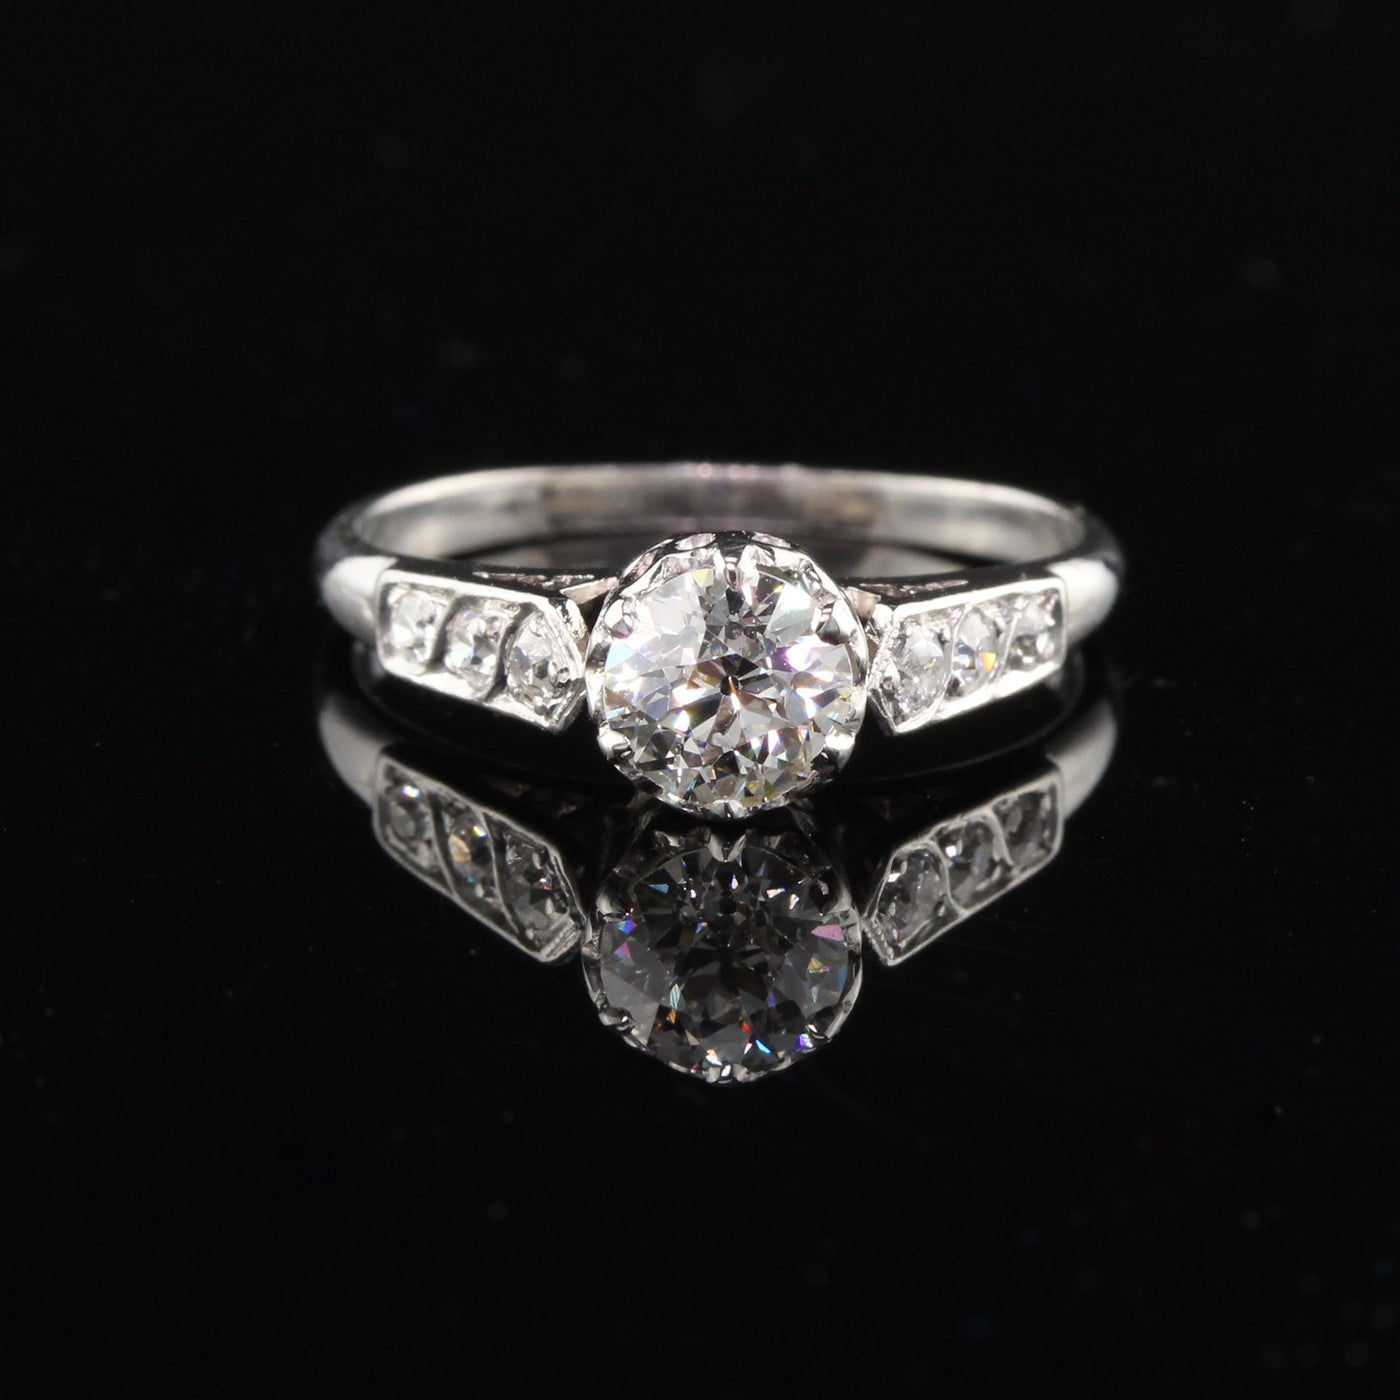 Antique Edwardian Platinum Old European Cut Diamond Engagement Ring - The Antique Parlour